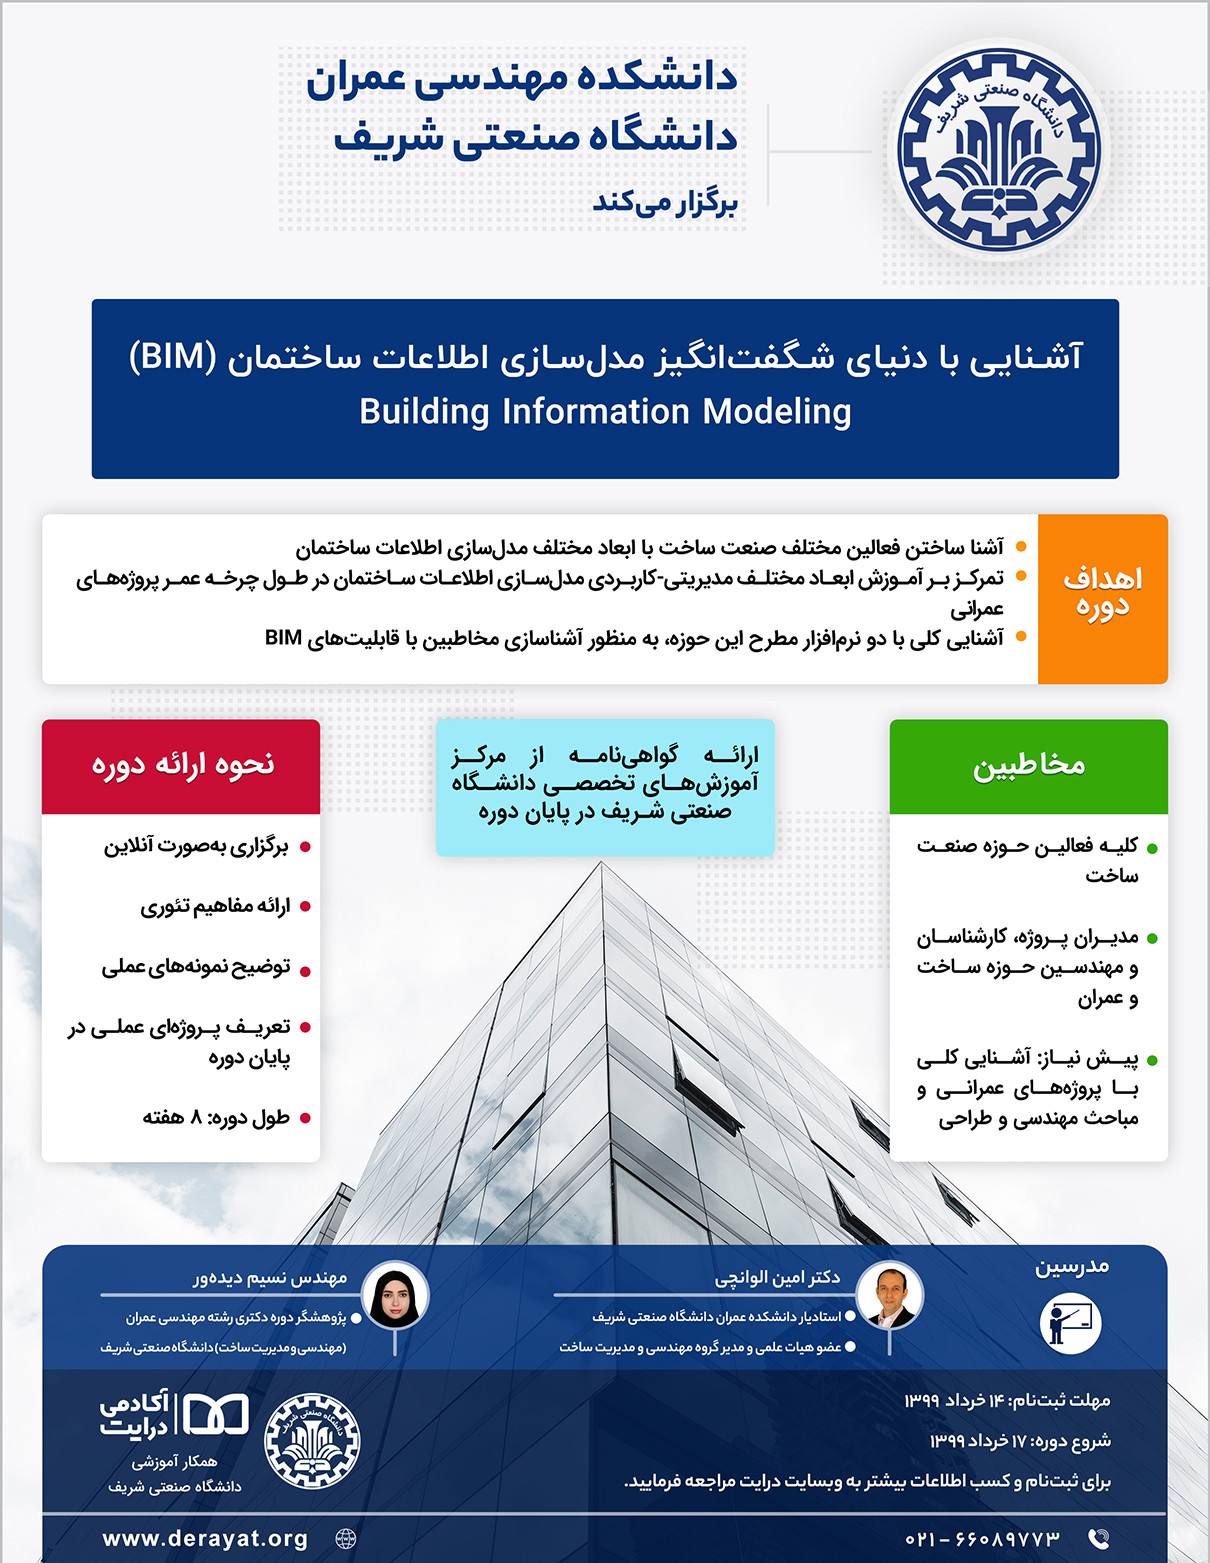  آشنایی با مدلسازی اطلاعات ساختمان (آنلاین) پوستر رویداد 